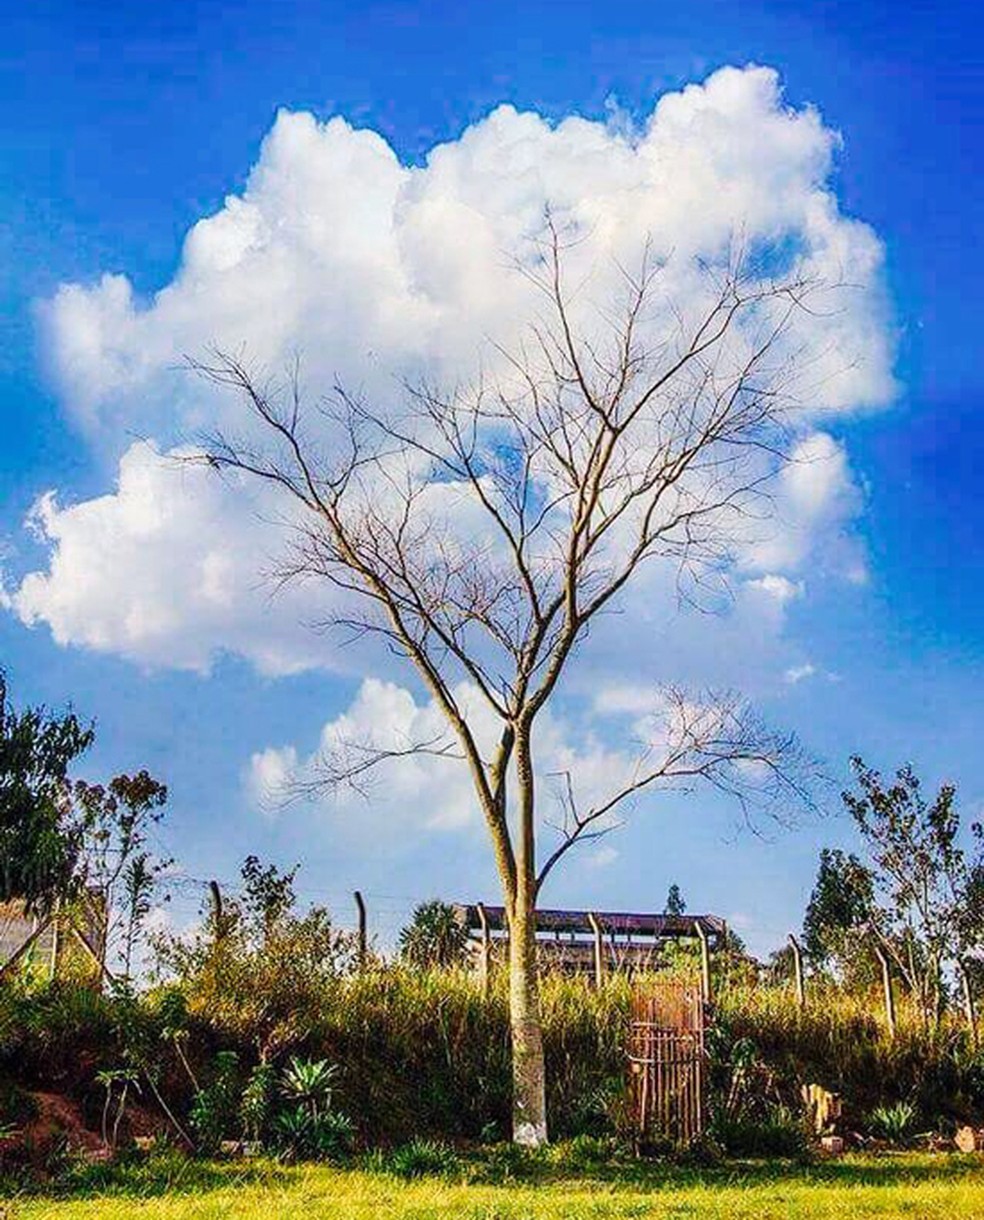 Foto de árvore circundada por nuvens causou embate entre dois brasileiros sobre autoria — Foto: Arquivo pessoal